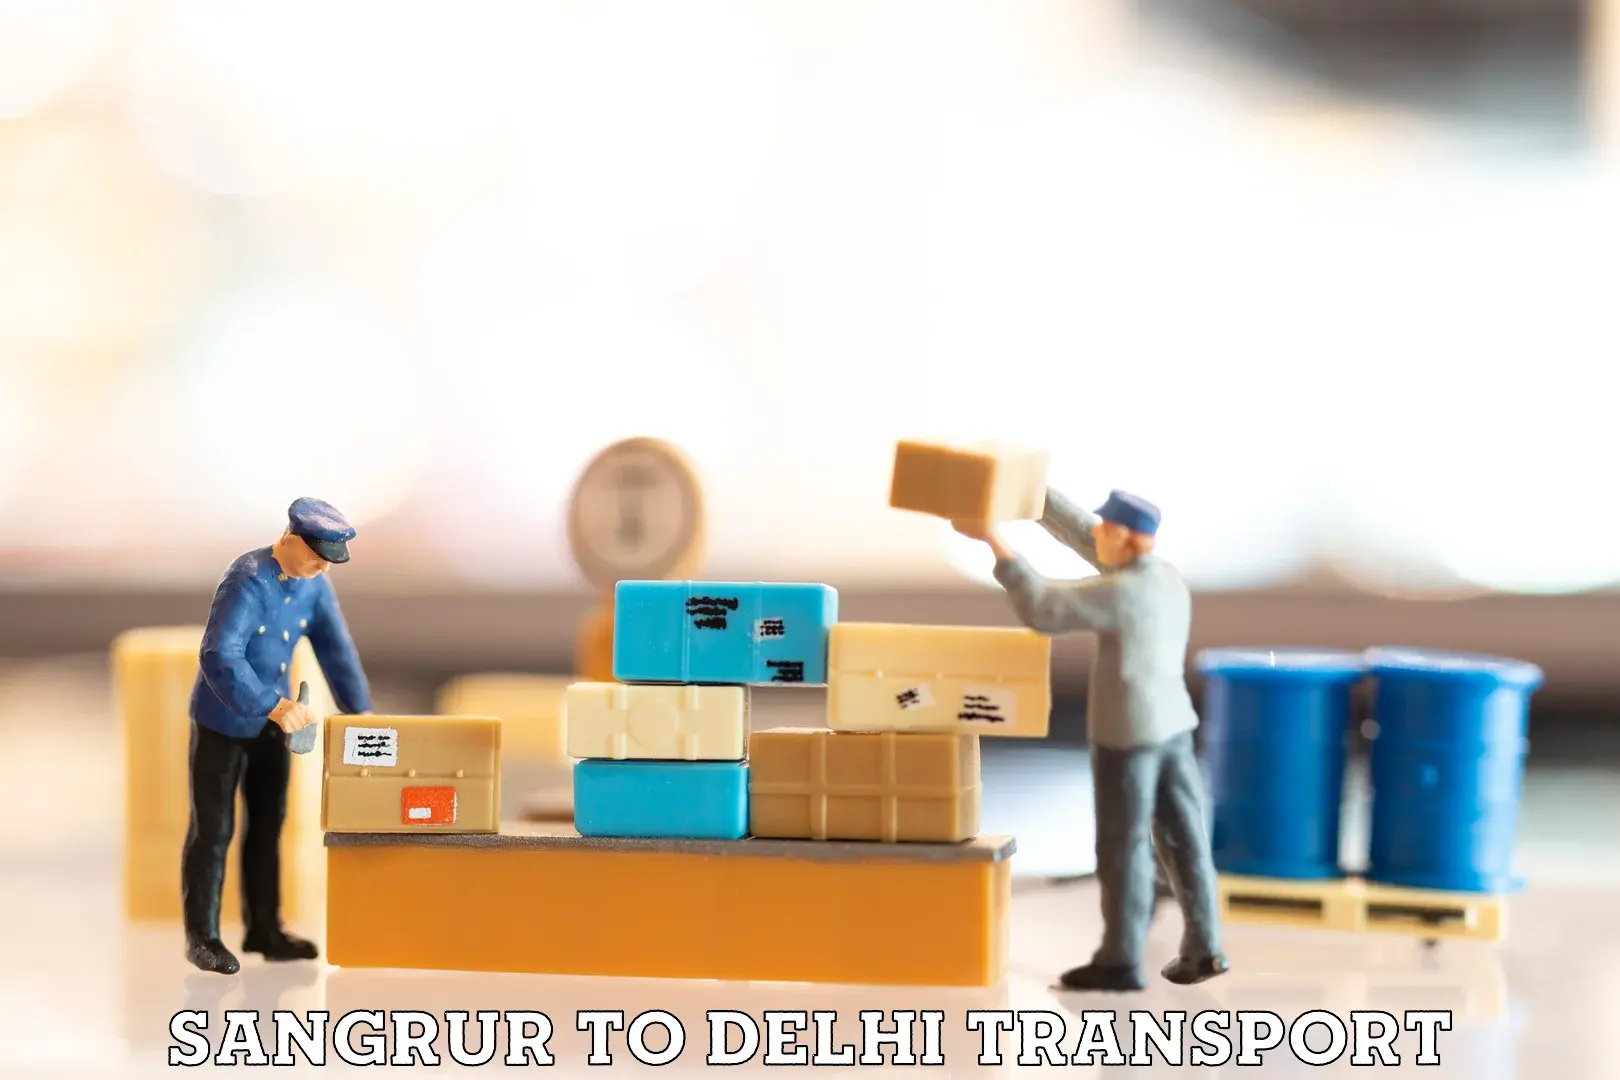 Bike transport service Sangrur to Delhi Technological University DTU